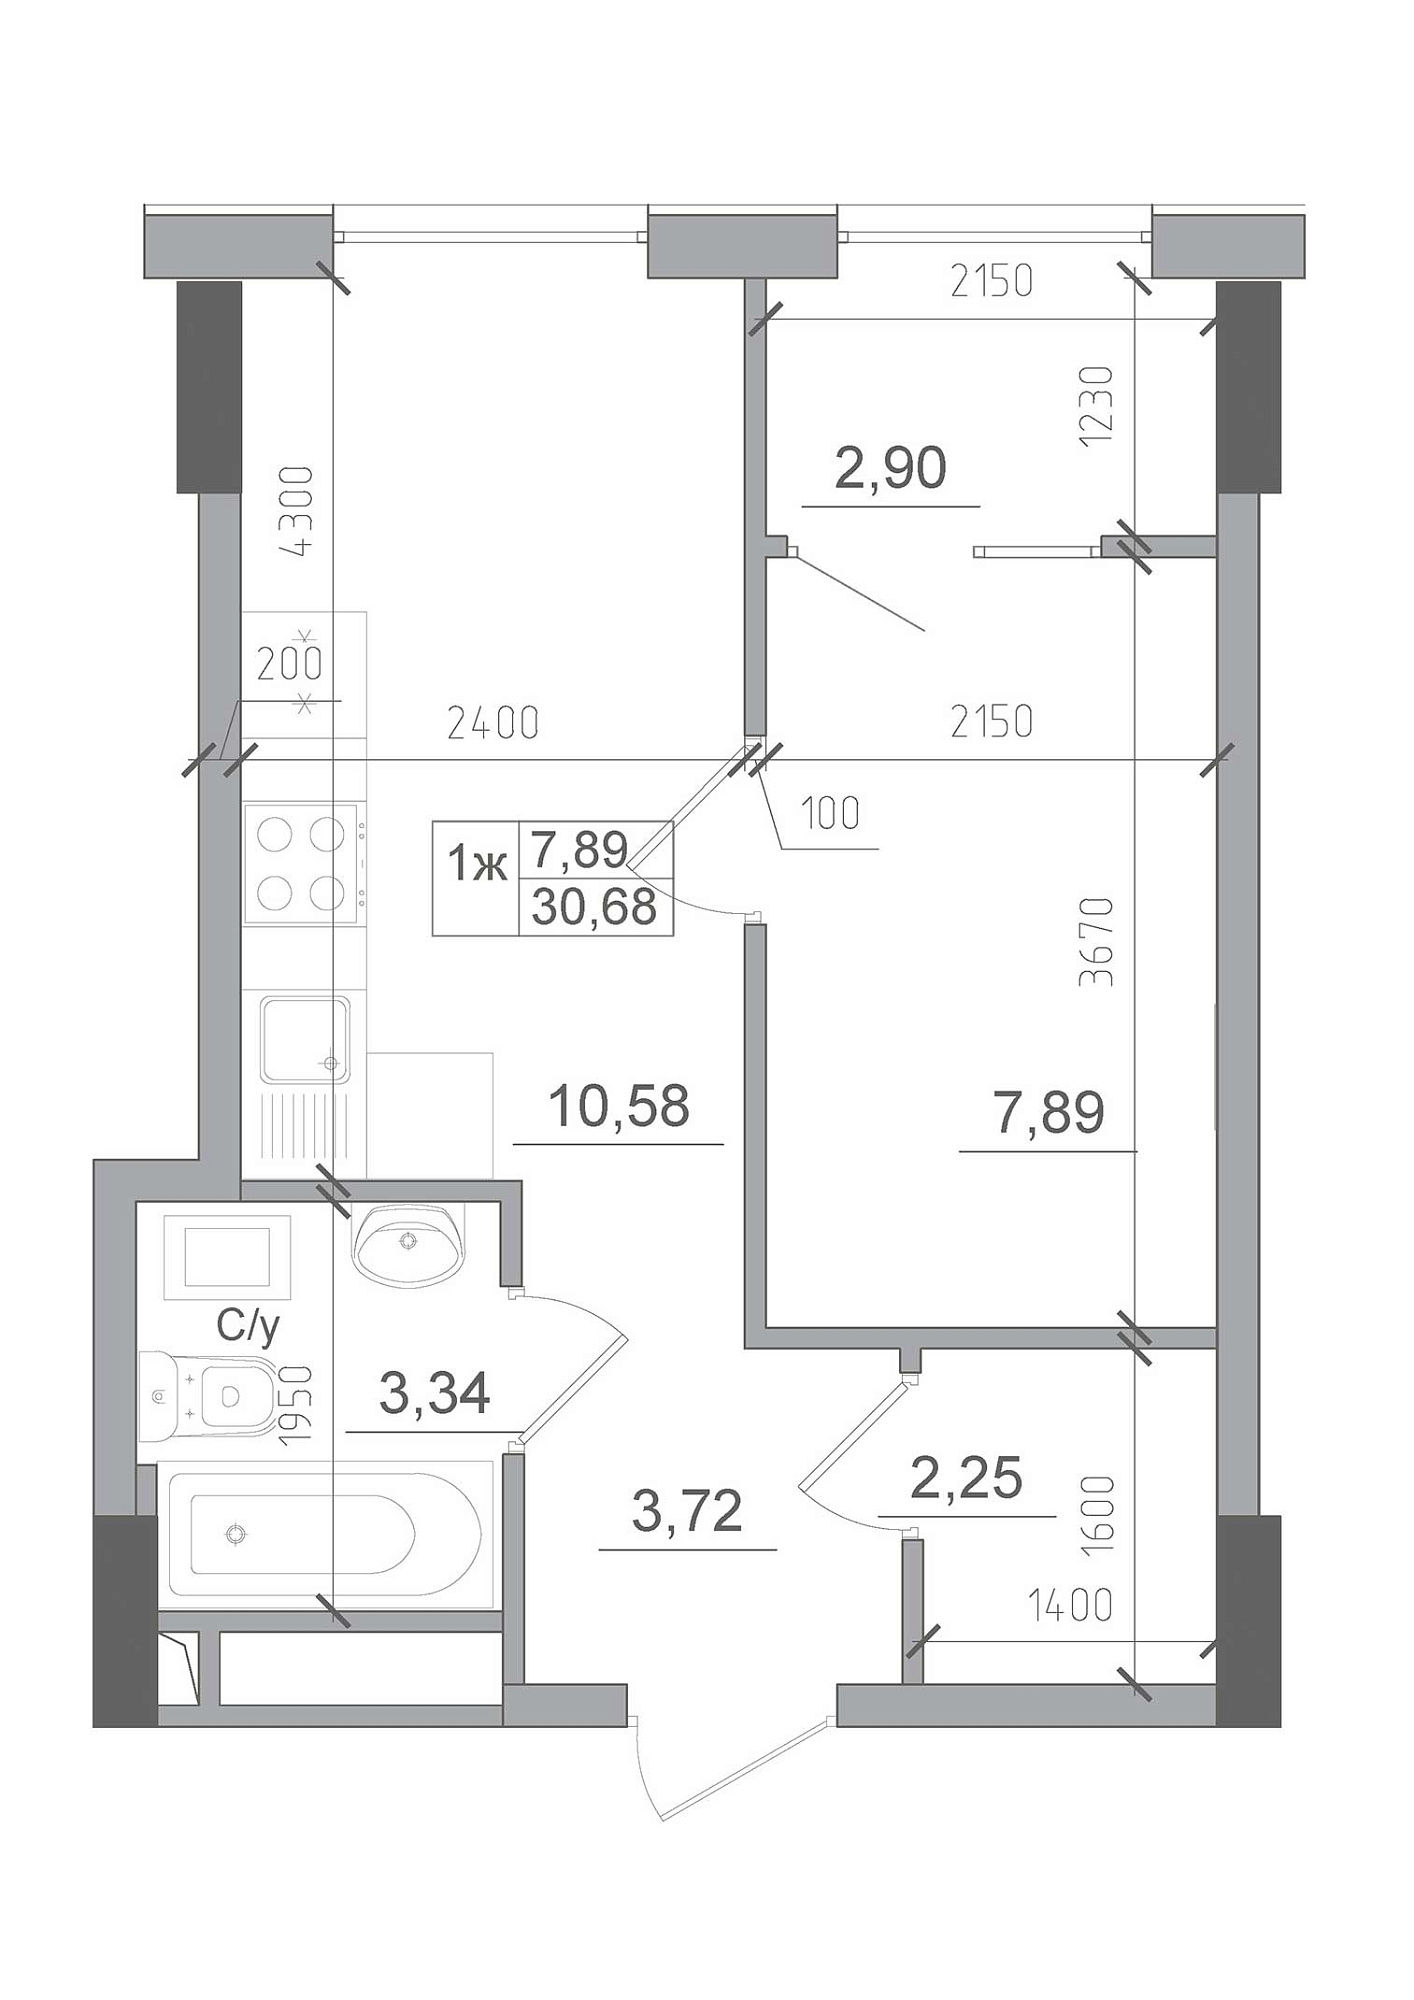 Планування 1-к квартира площею 30.68м2, AB-22-05/00012.